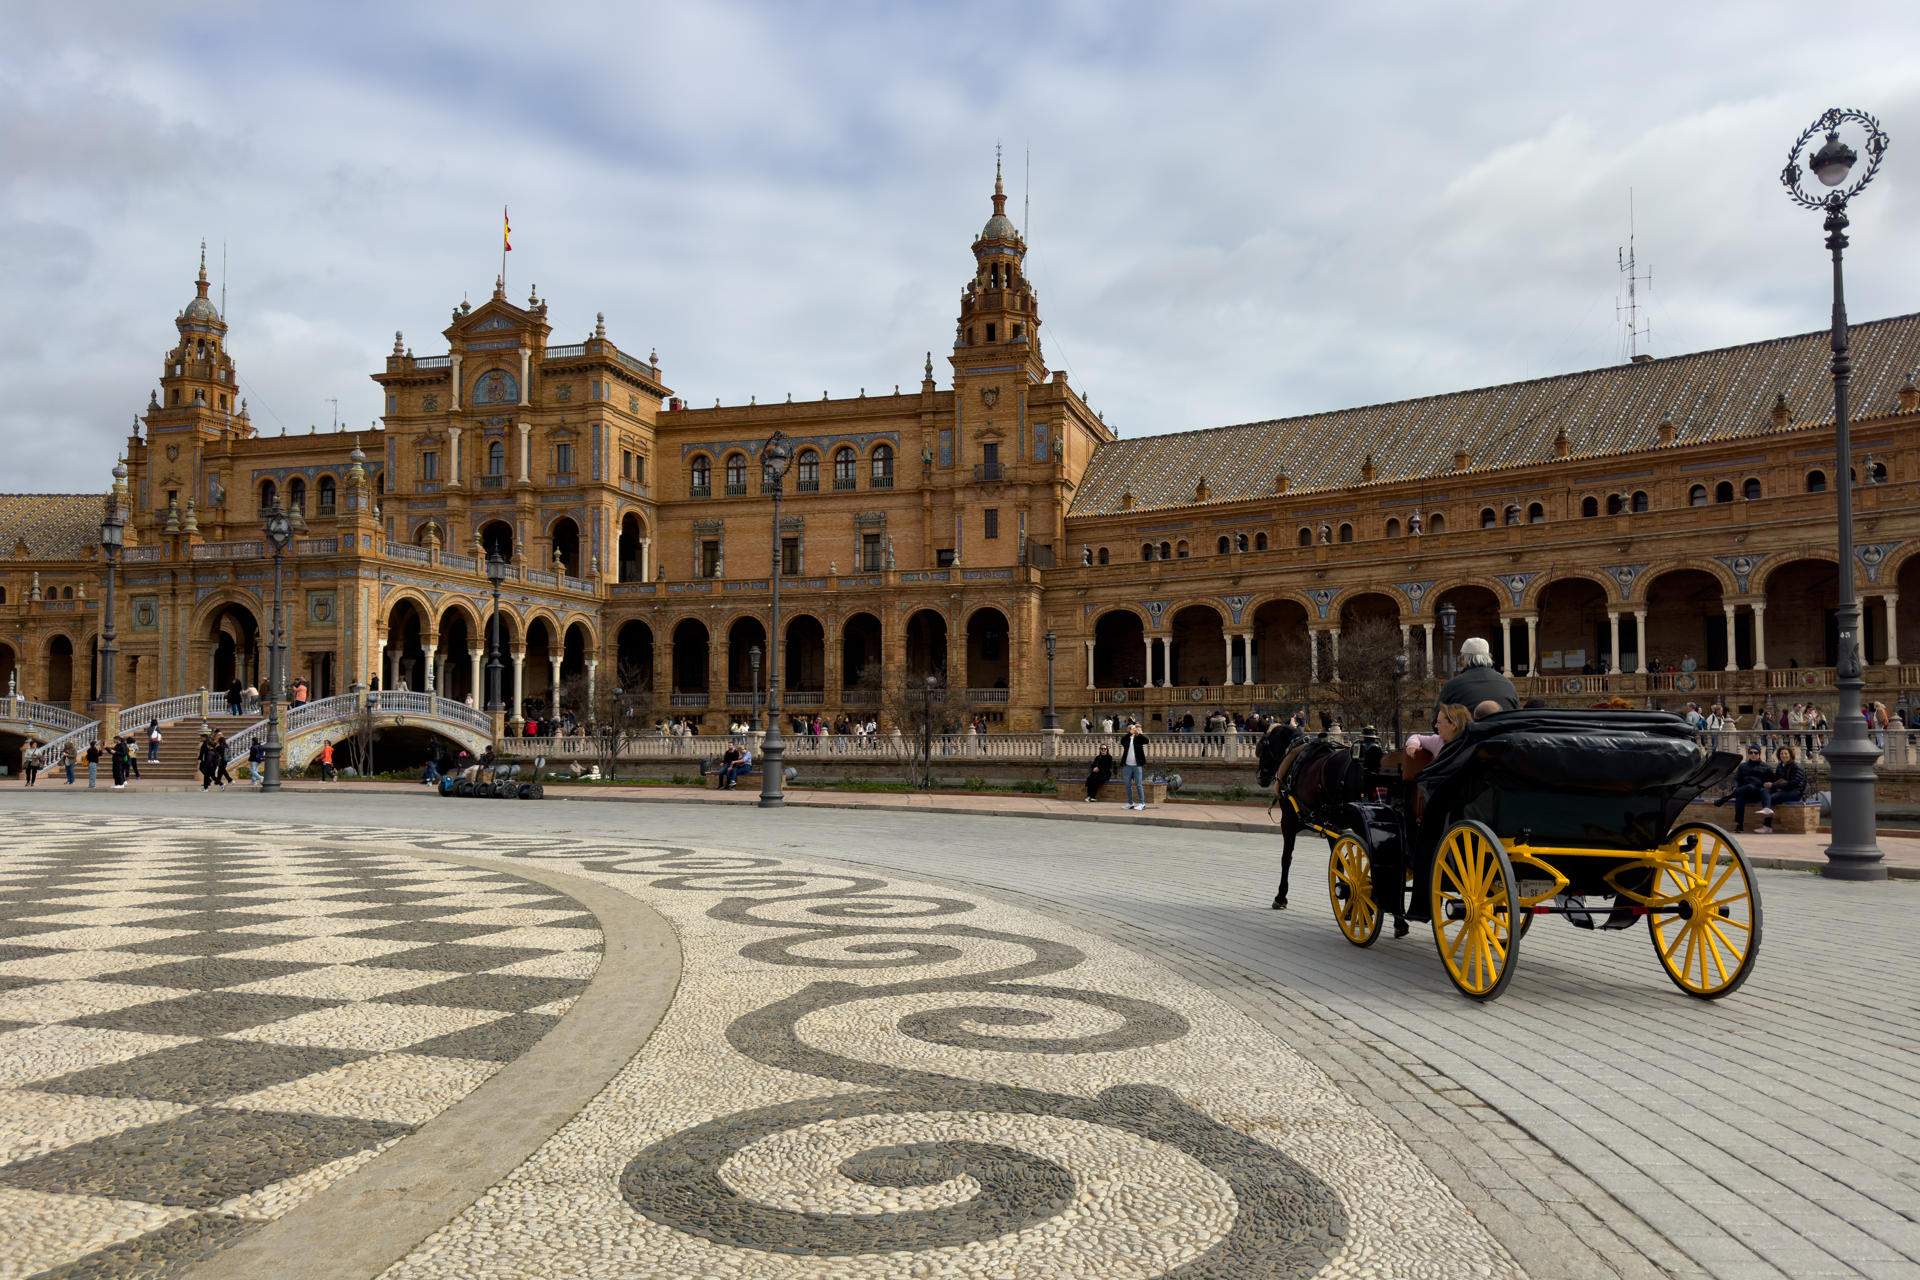 Sevilla vol tancar la plaça d'España i cobrar entrada als turistes